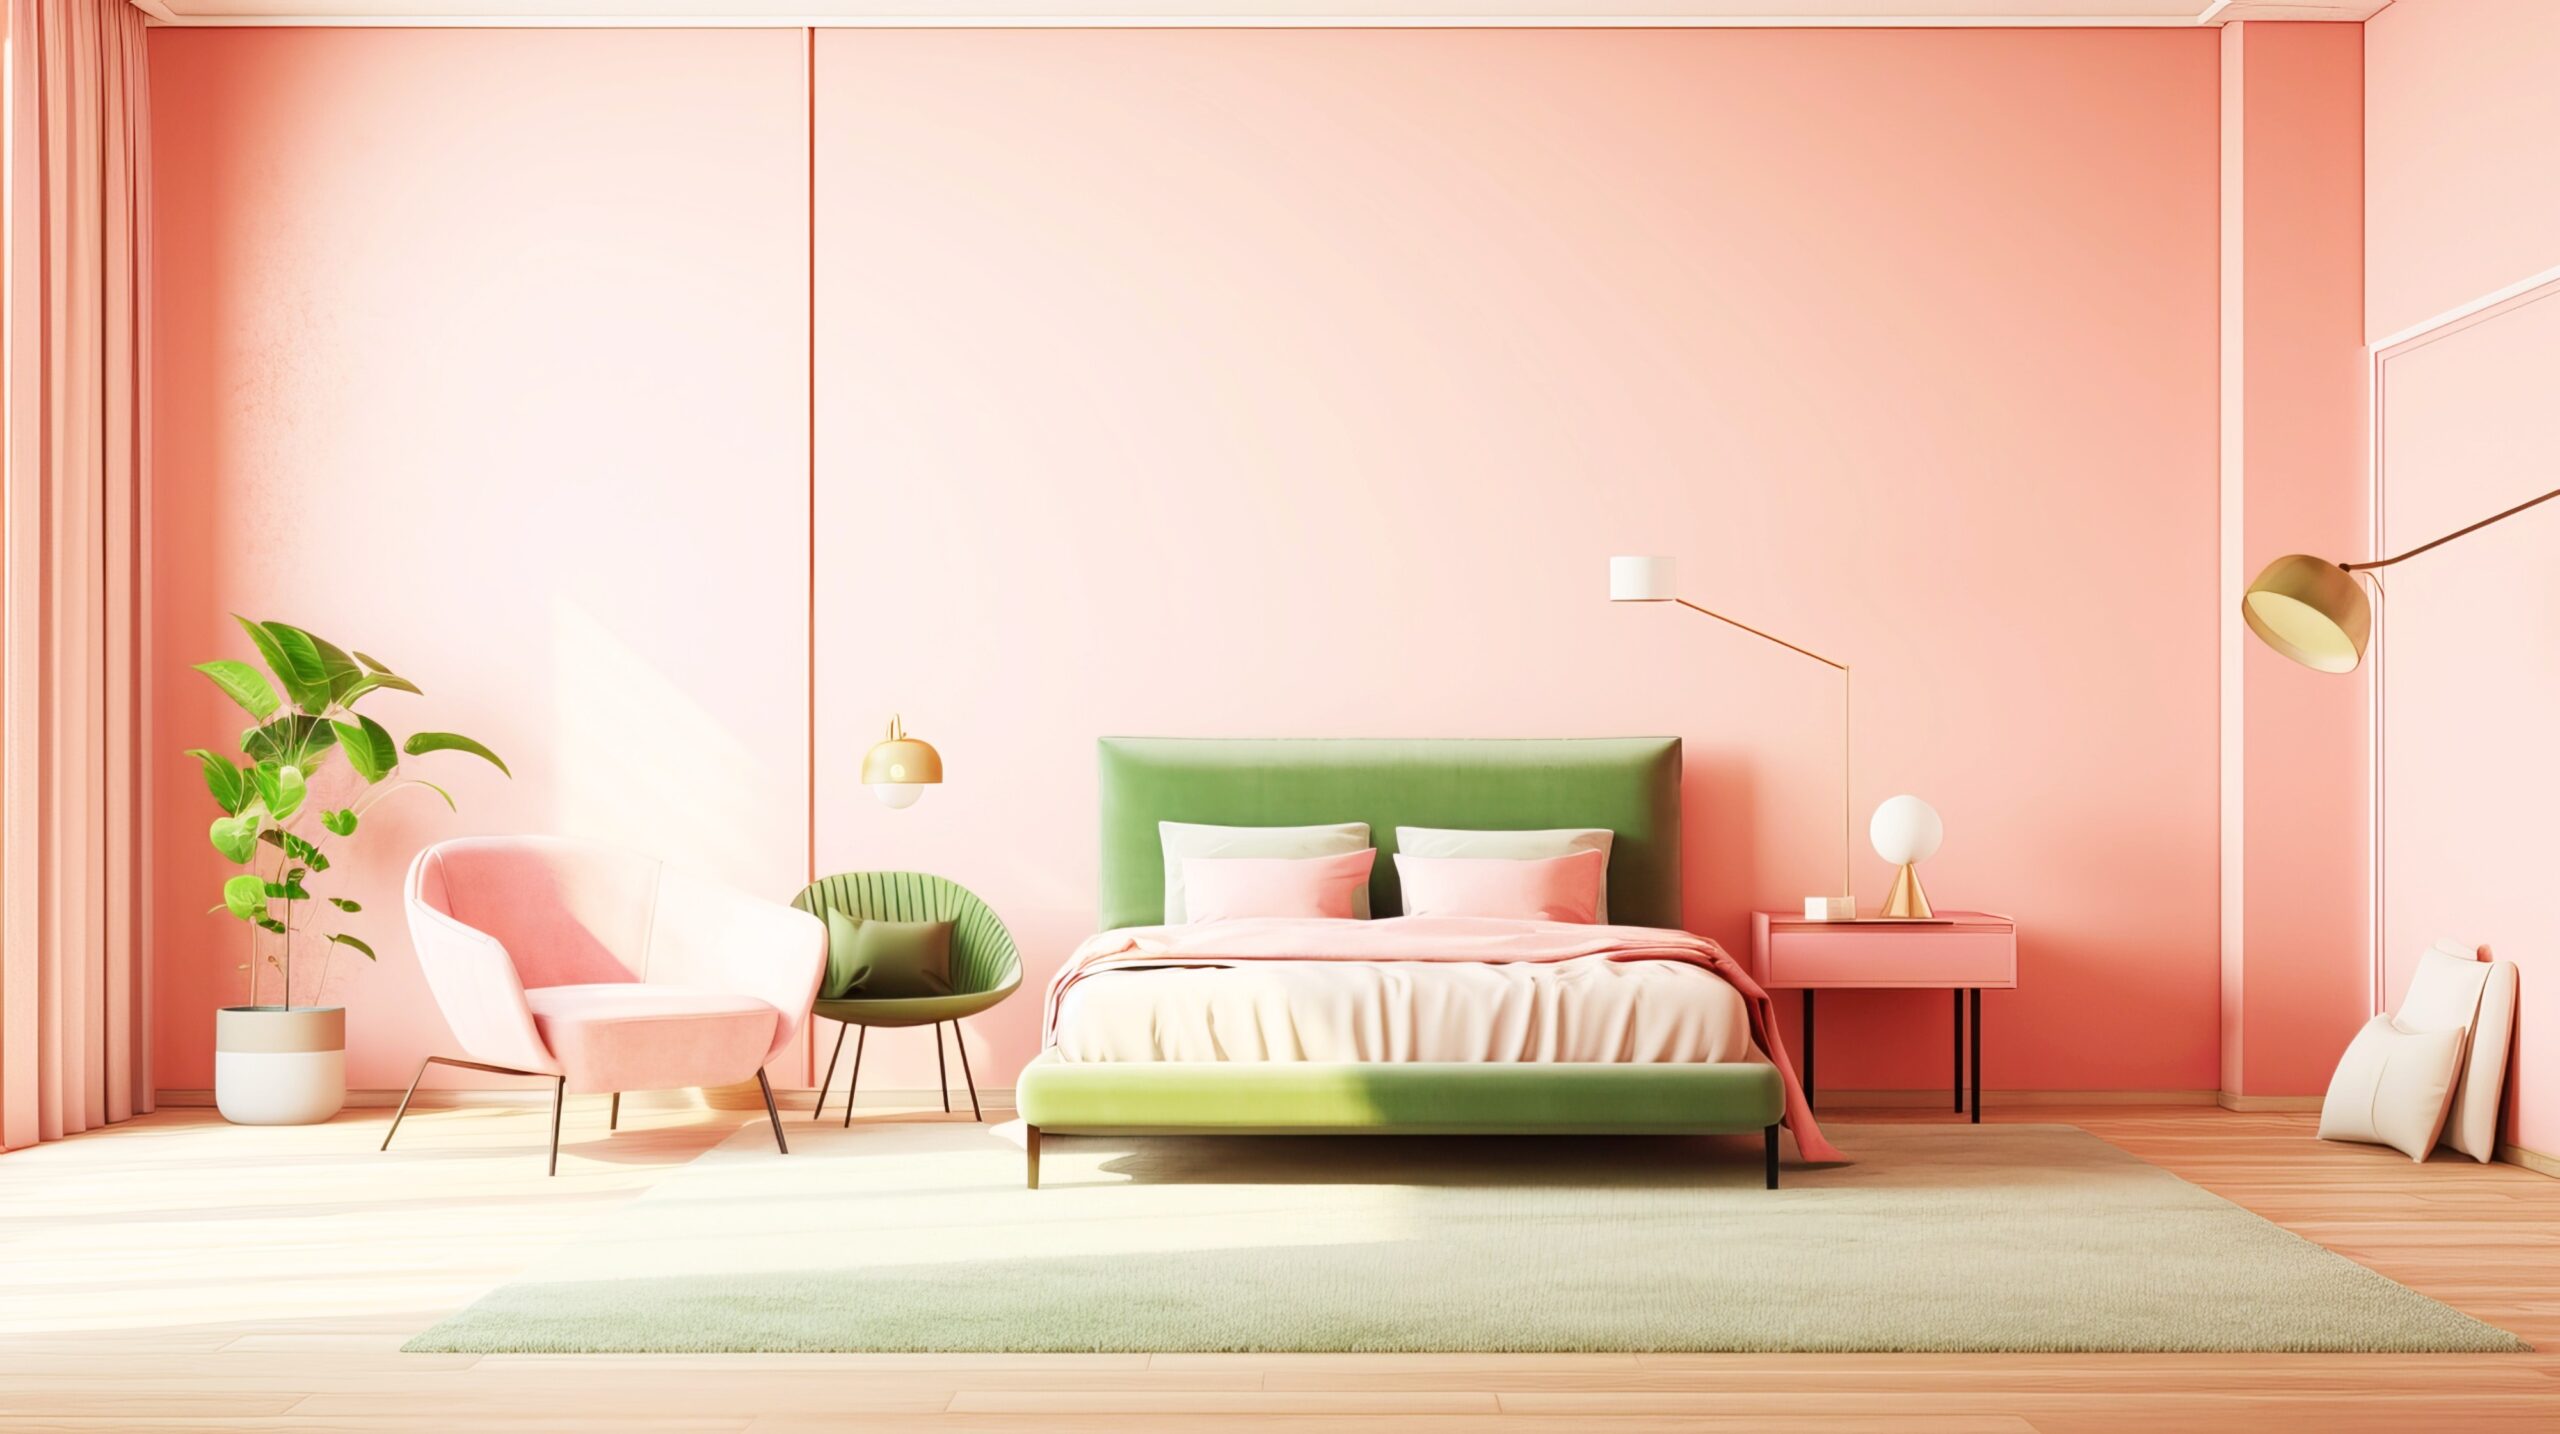 <img src="large.jpg" alt="large pink and green bedroom"/>